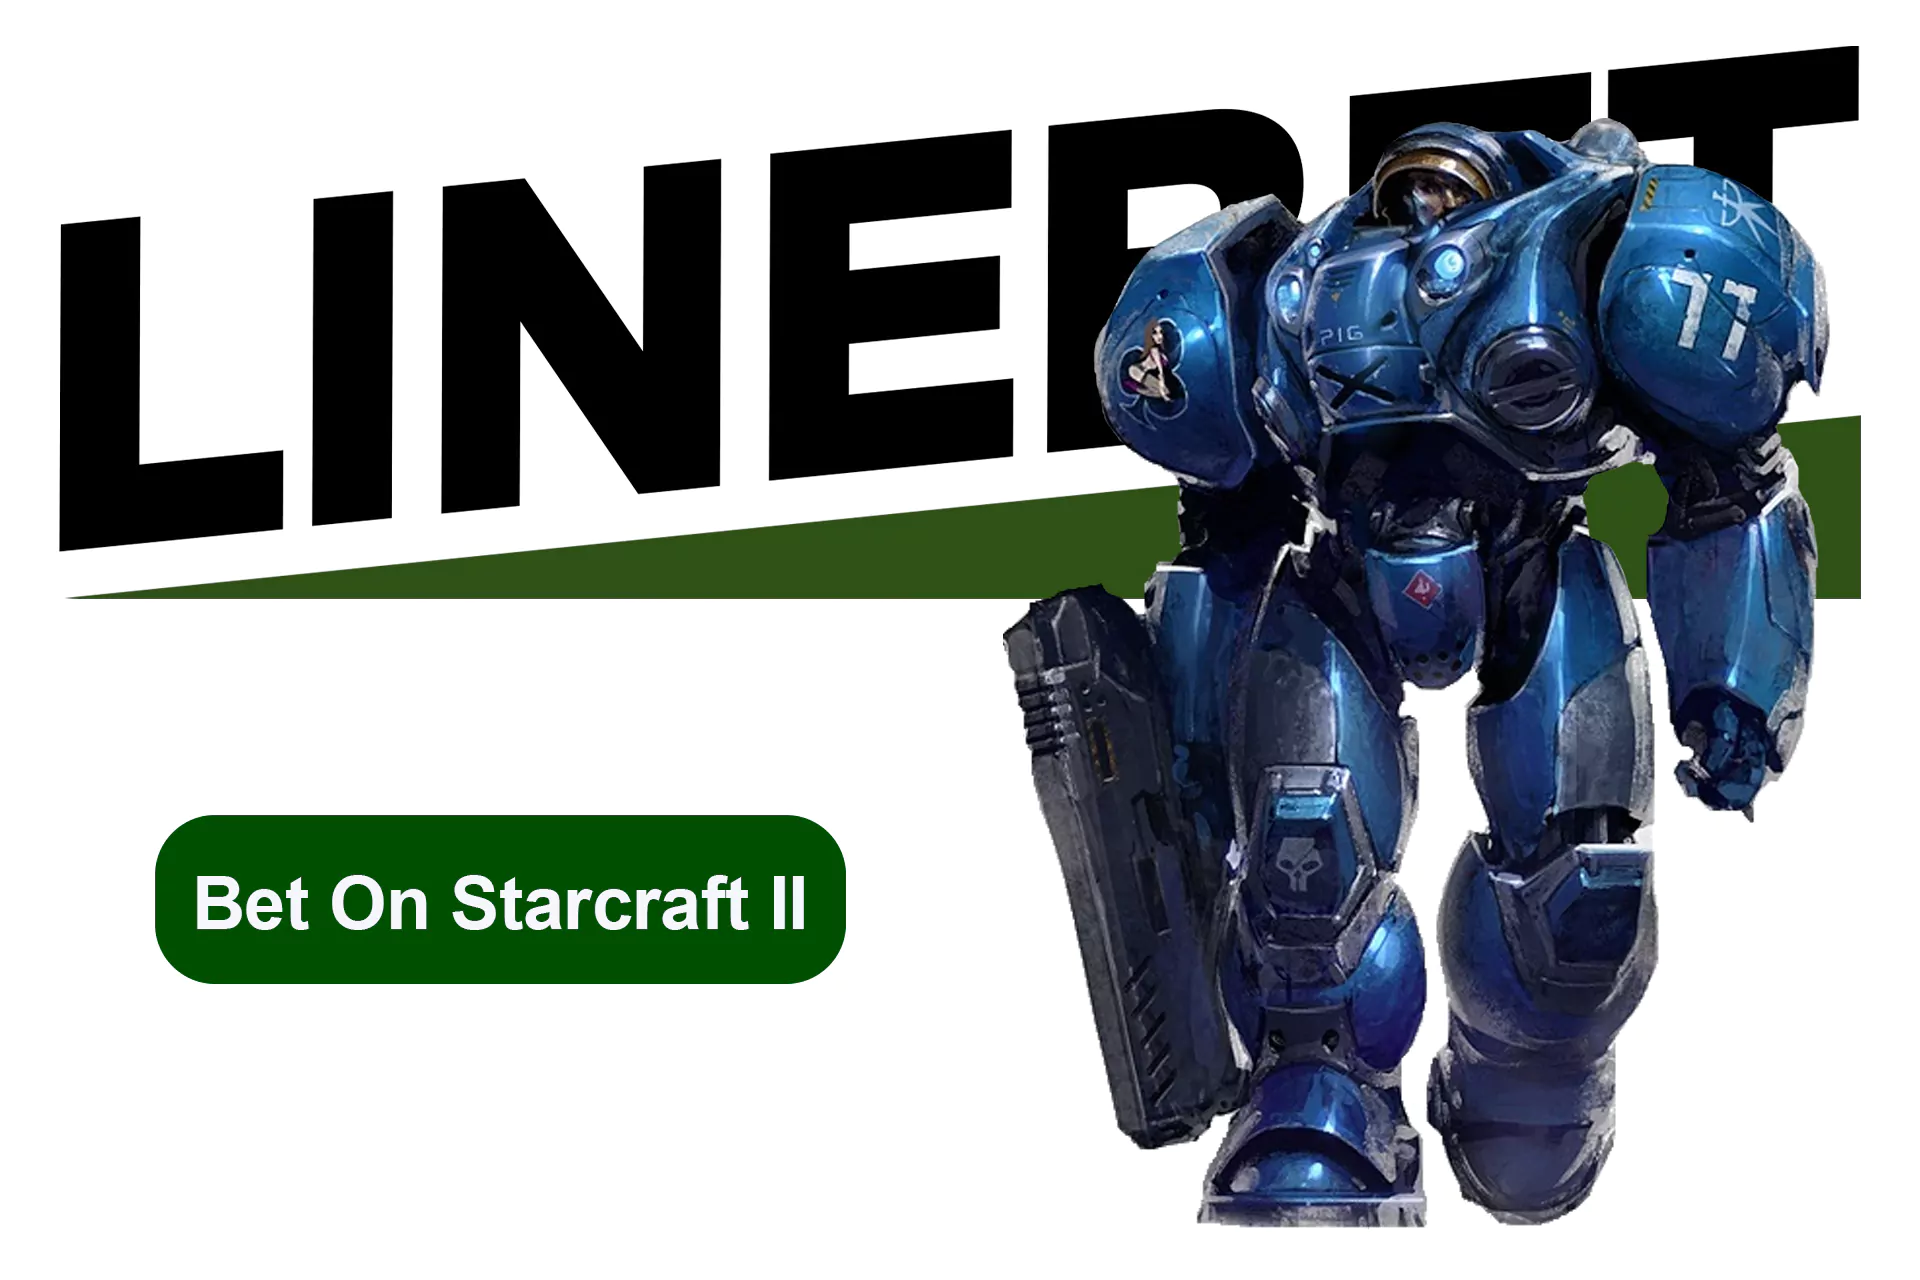 Starcraft 2 একটি জনপ্রিয় এস্পোর্টস গেম যা সবসময় স্পোর্টসবুকে উপস্থাপিত হয়।